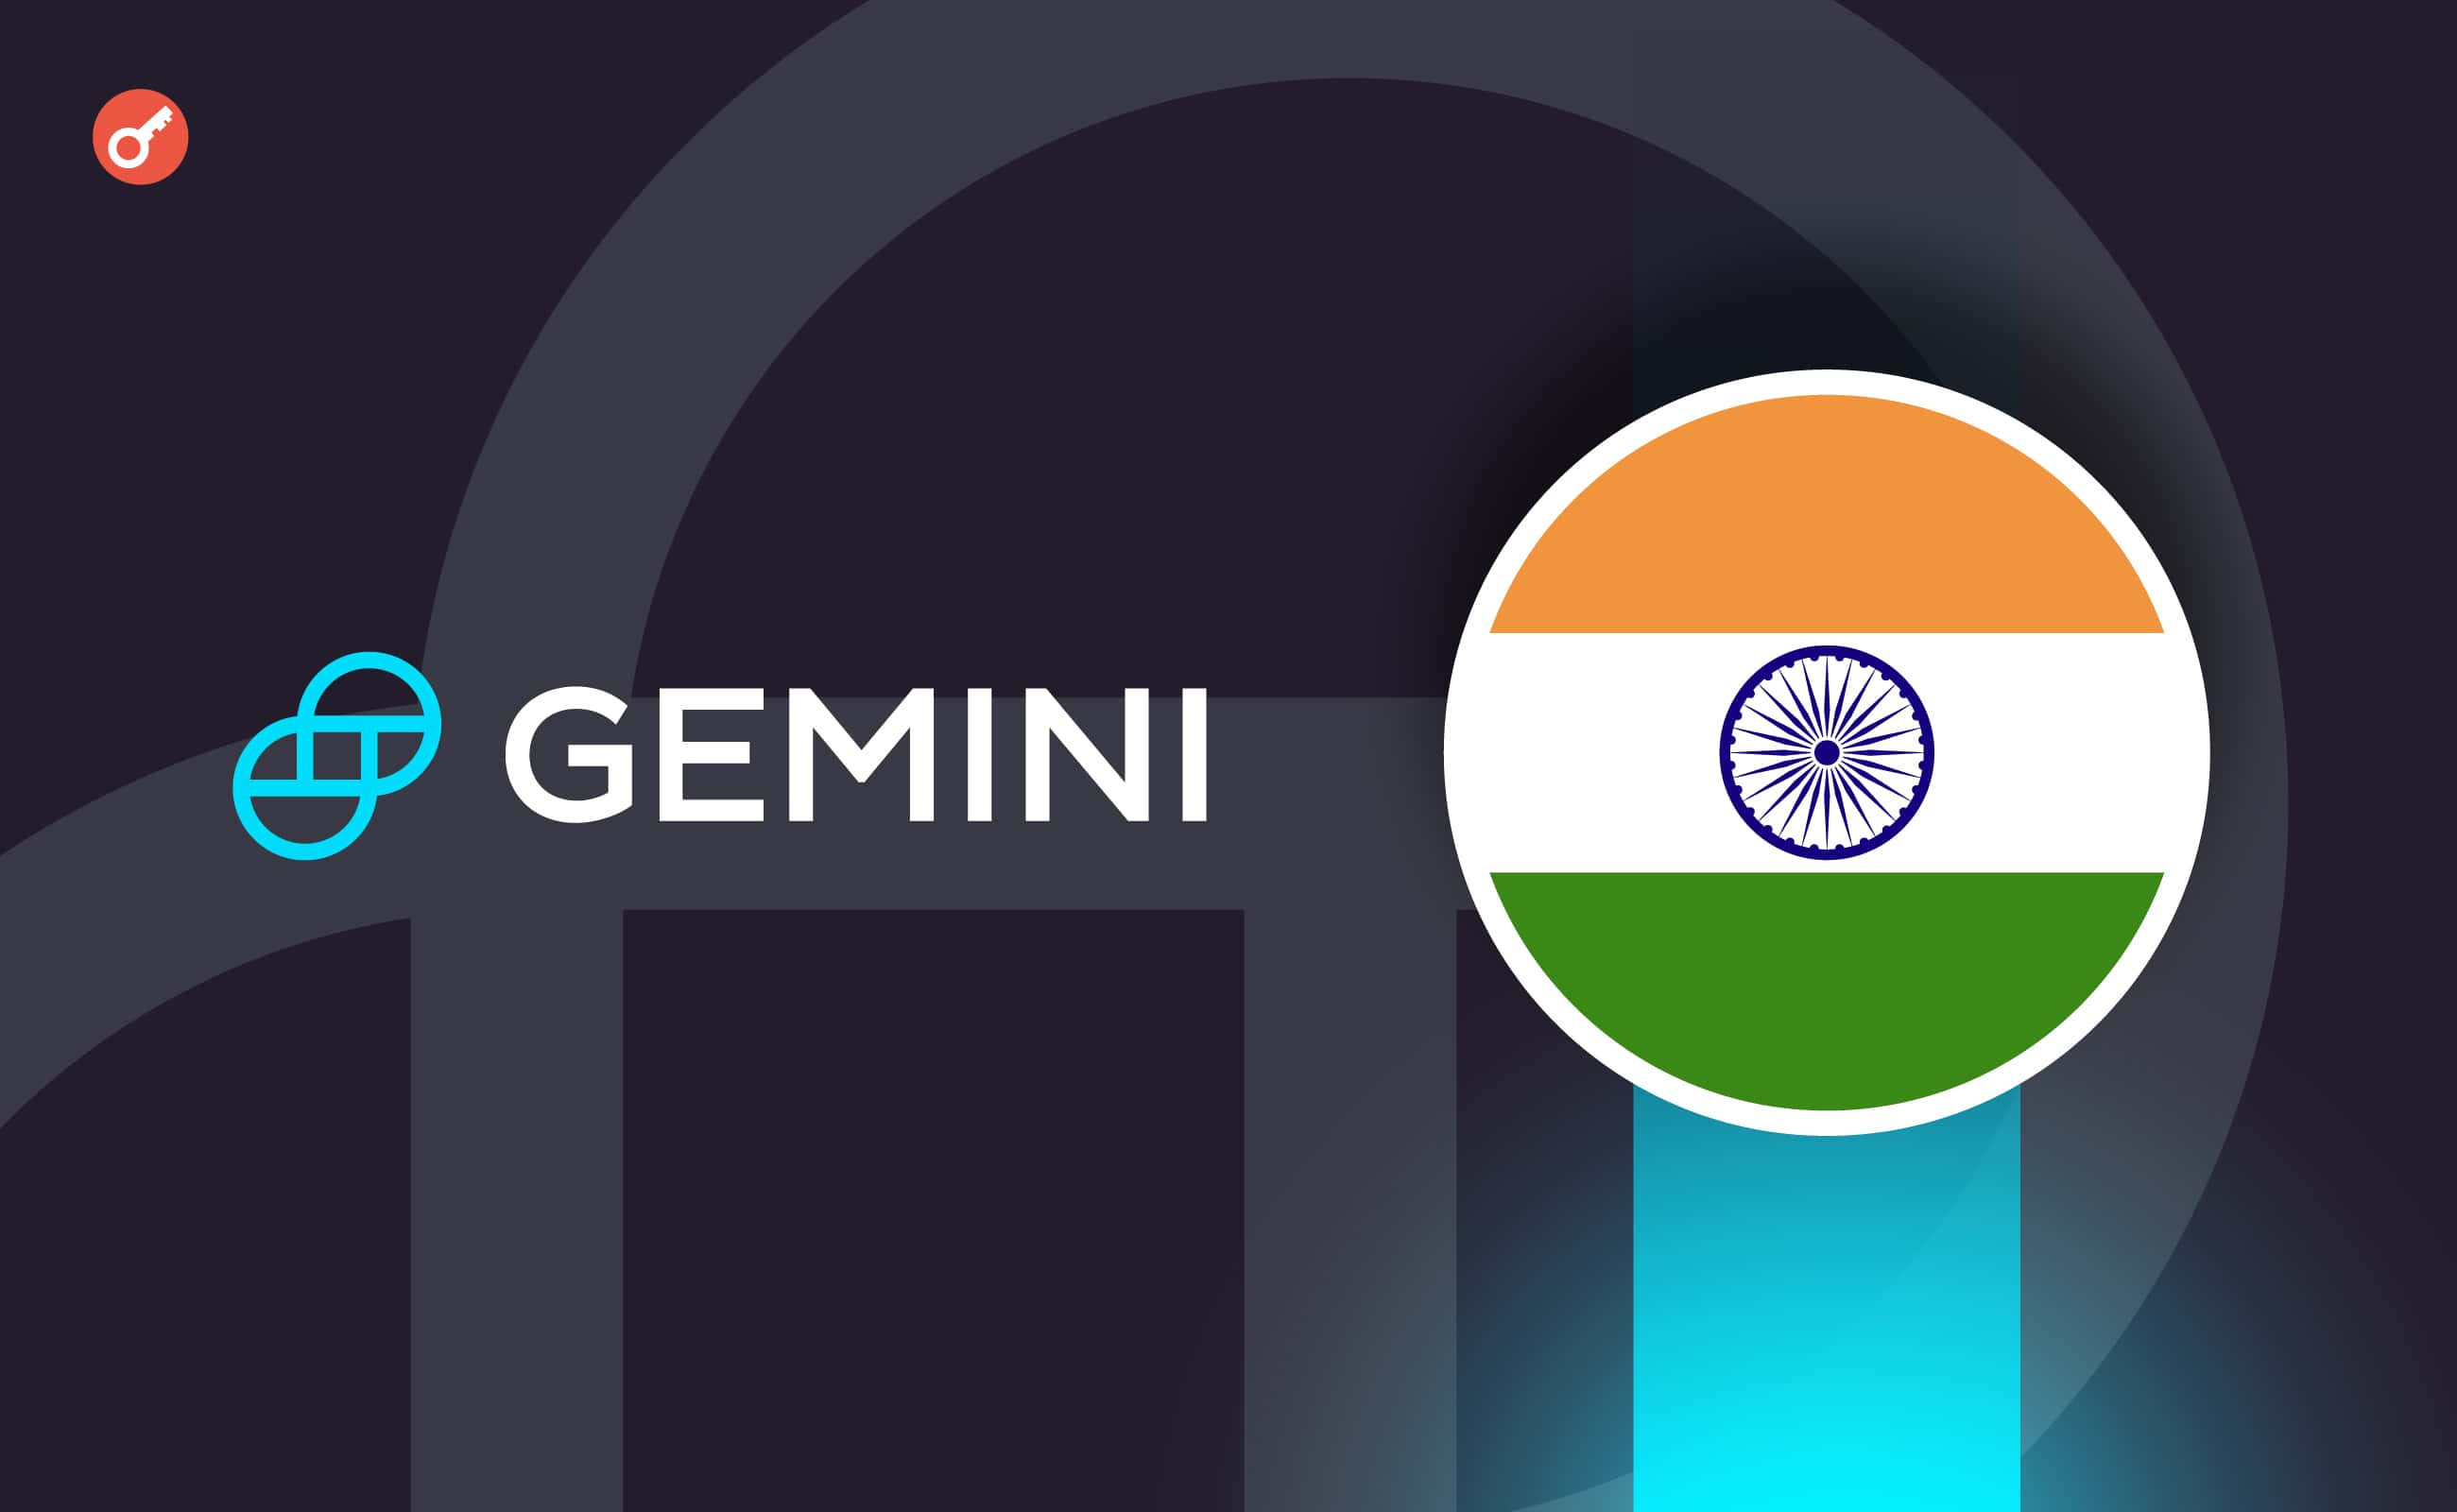 Gemini оголосила про плани інвестицій на $24 млн в Індію. Головний колаж новини.